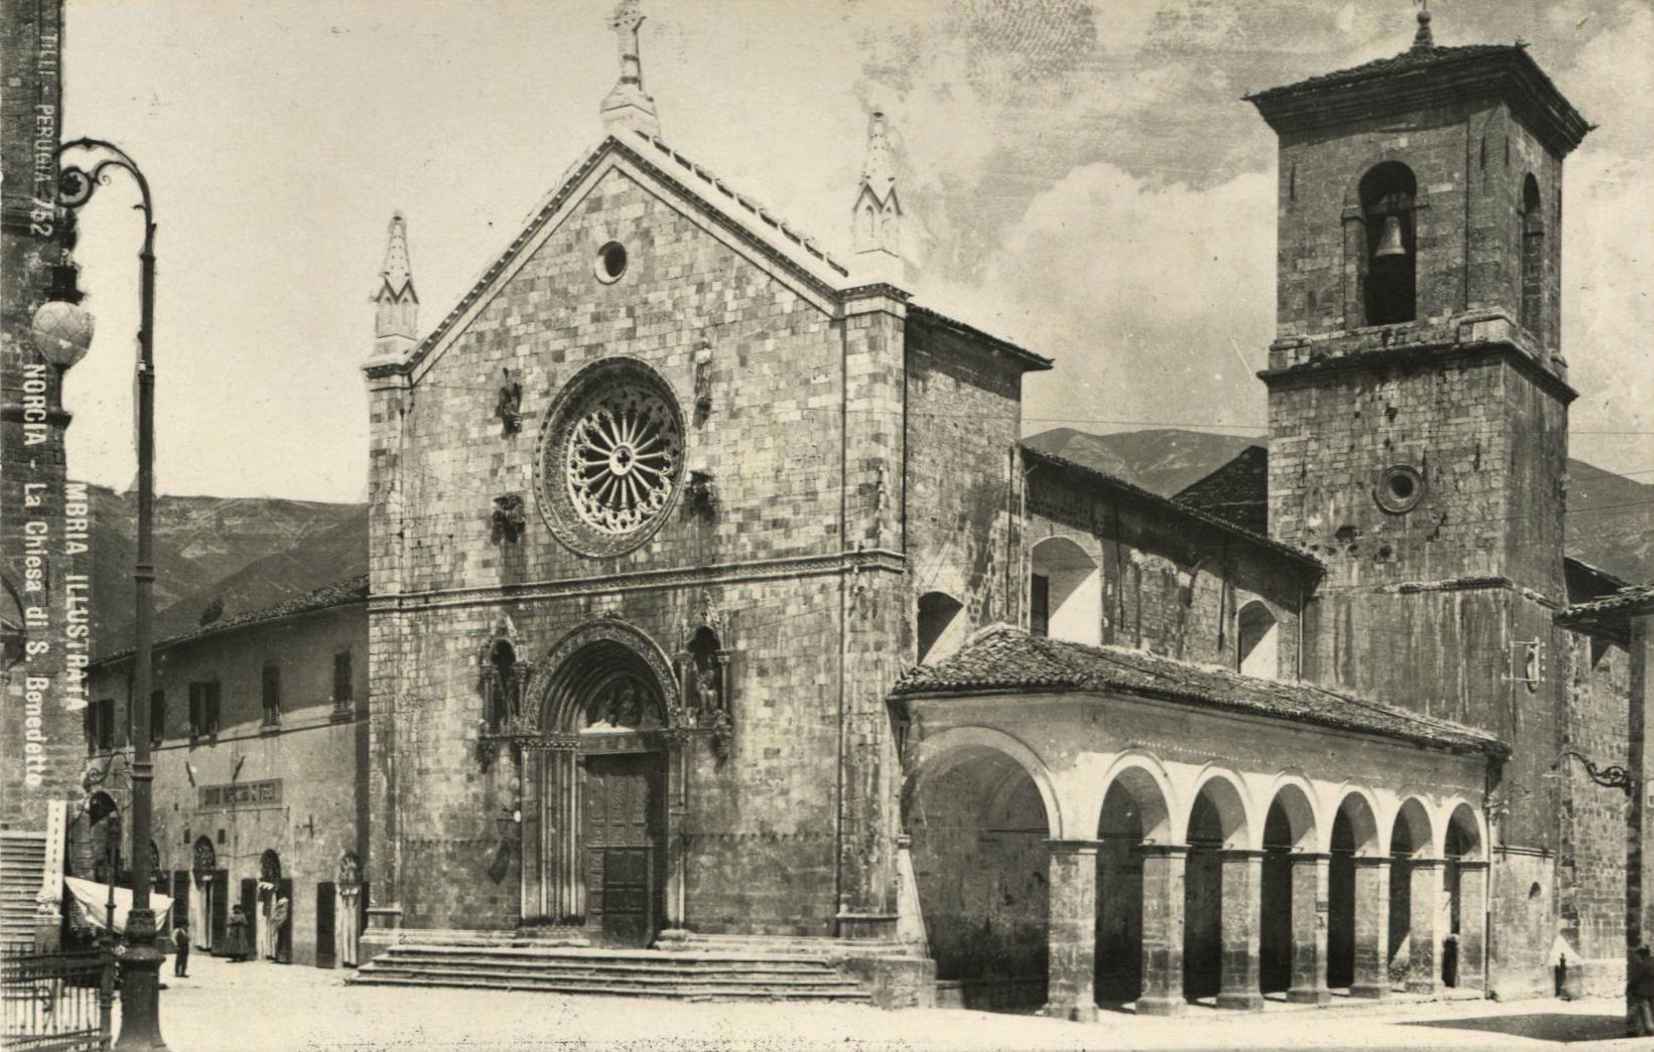 Basilica di San Benedetto e Portico delle Misure (Norcia) - Contributo di Naticchioni Gianpaolo alla call \"INSIEME#SANBENEDETTO - raccogliamo la memoria\"